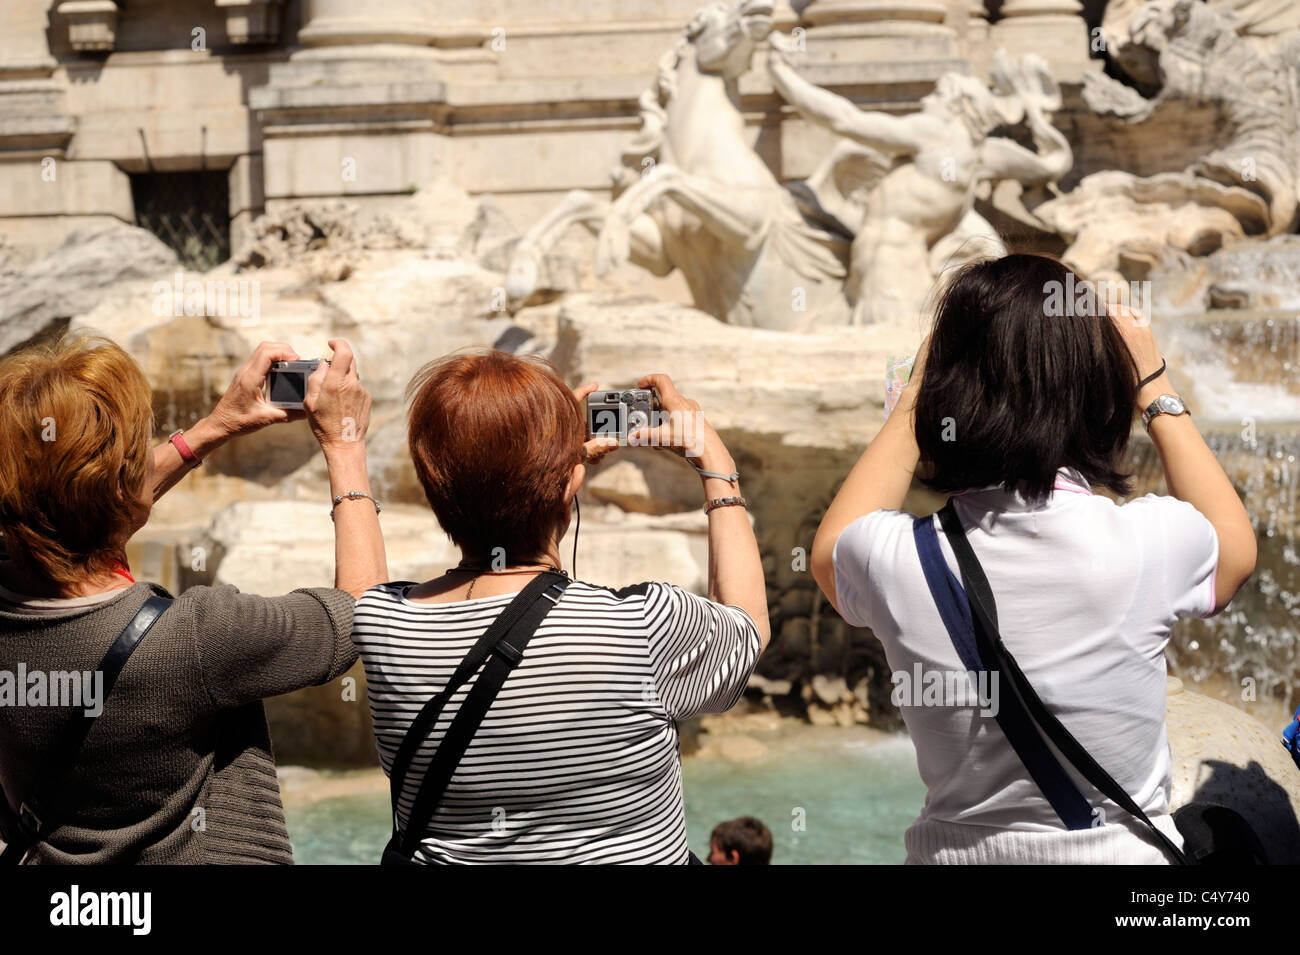 italy, rome, trevi fountain, tourists taking photos Stock Photo